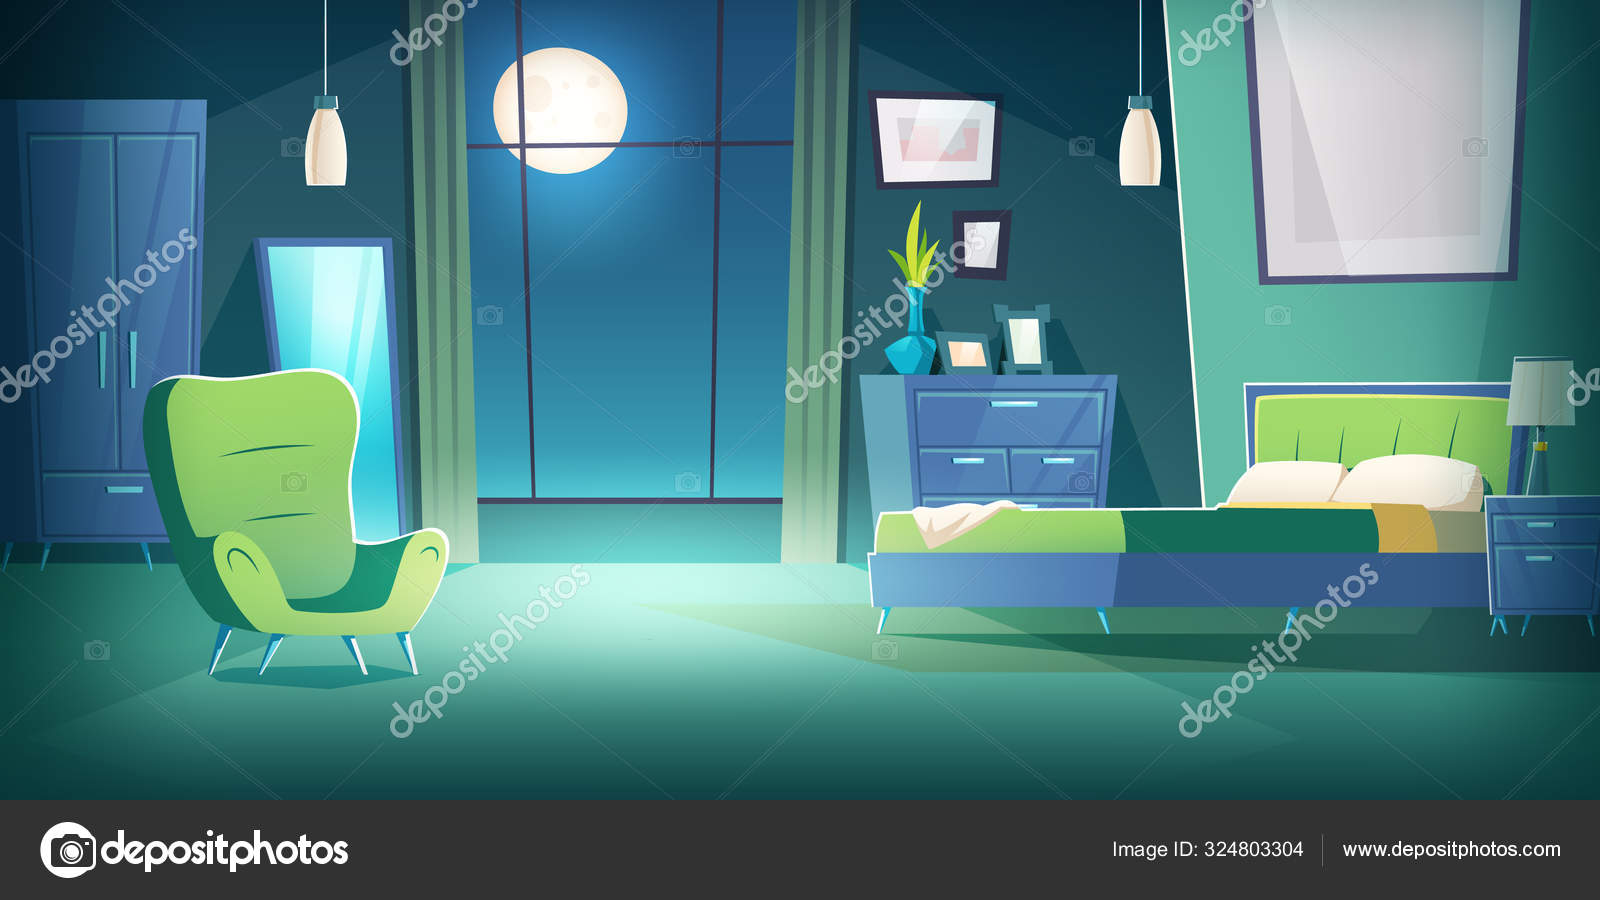 Bedroom interior at night with moonlight cartoon Stock Vector Image by  ©klyaksun #324803304